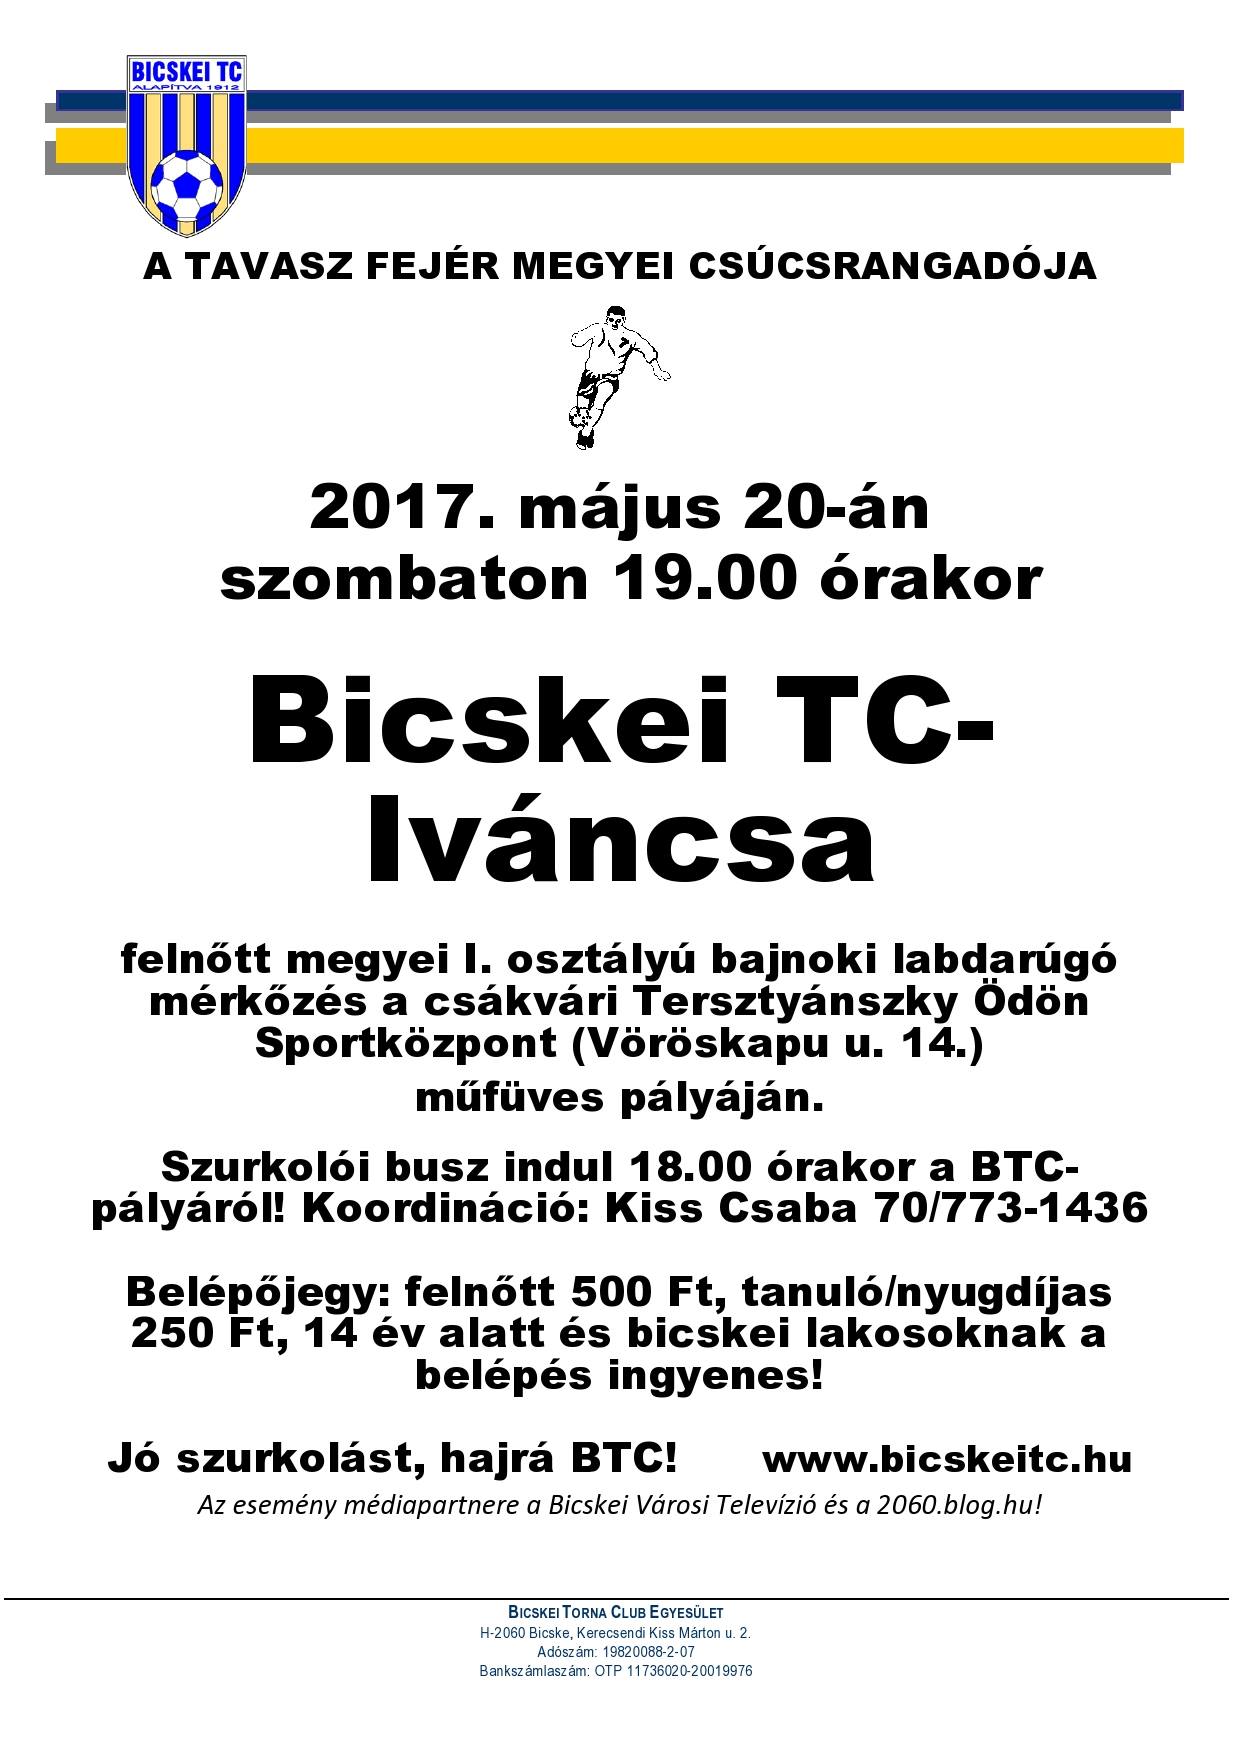 Bicske - Iváncsa rangadót rendeznek a Megyei I. osztály 27. fordulójában - fotó: 2060.blog.hu